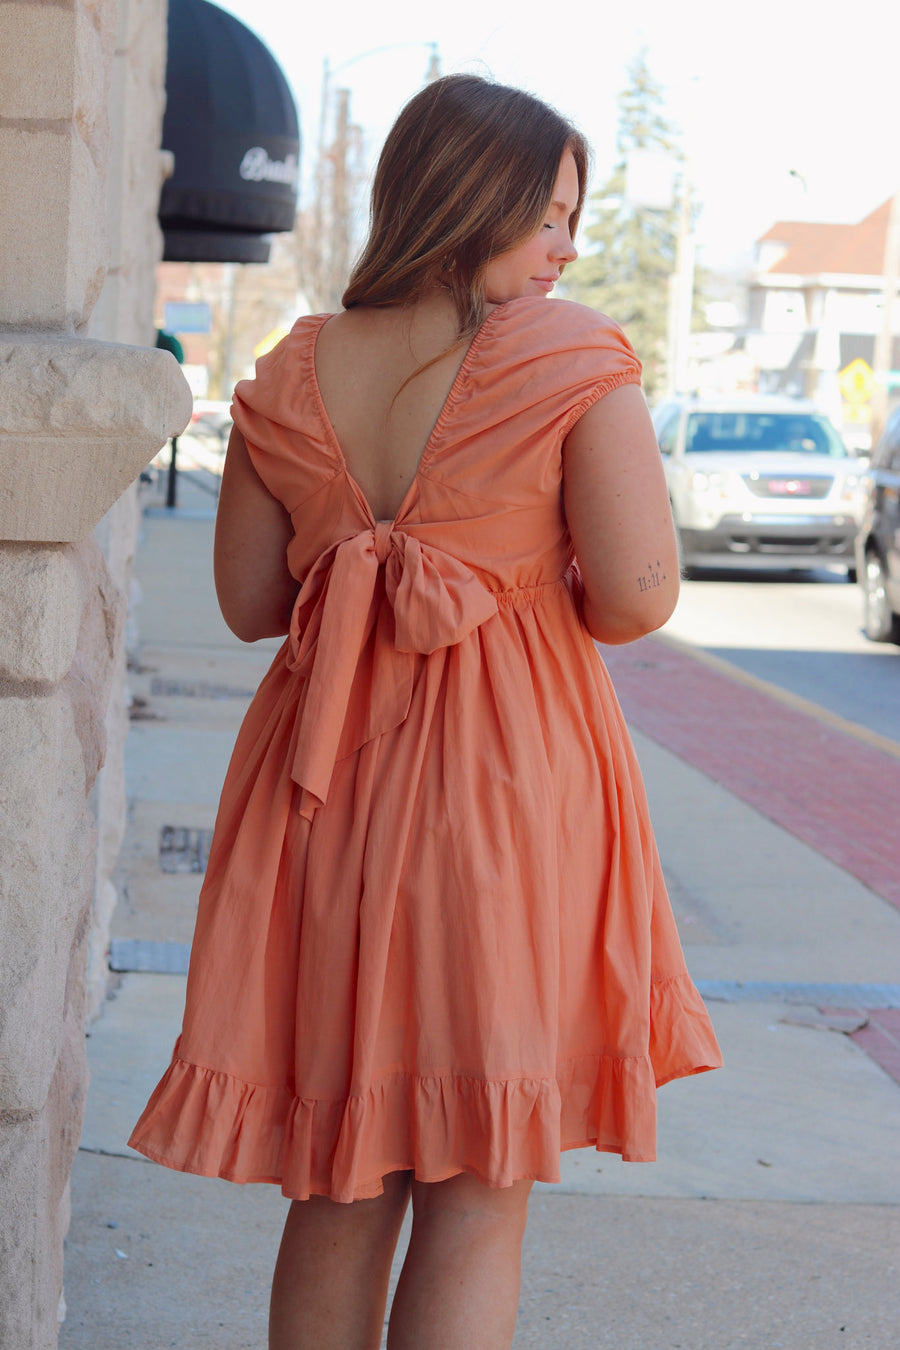 Apricot Mini Dress